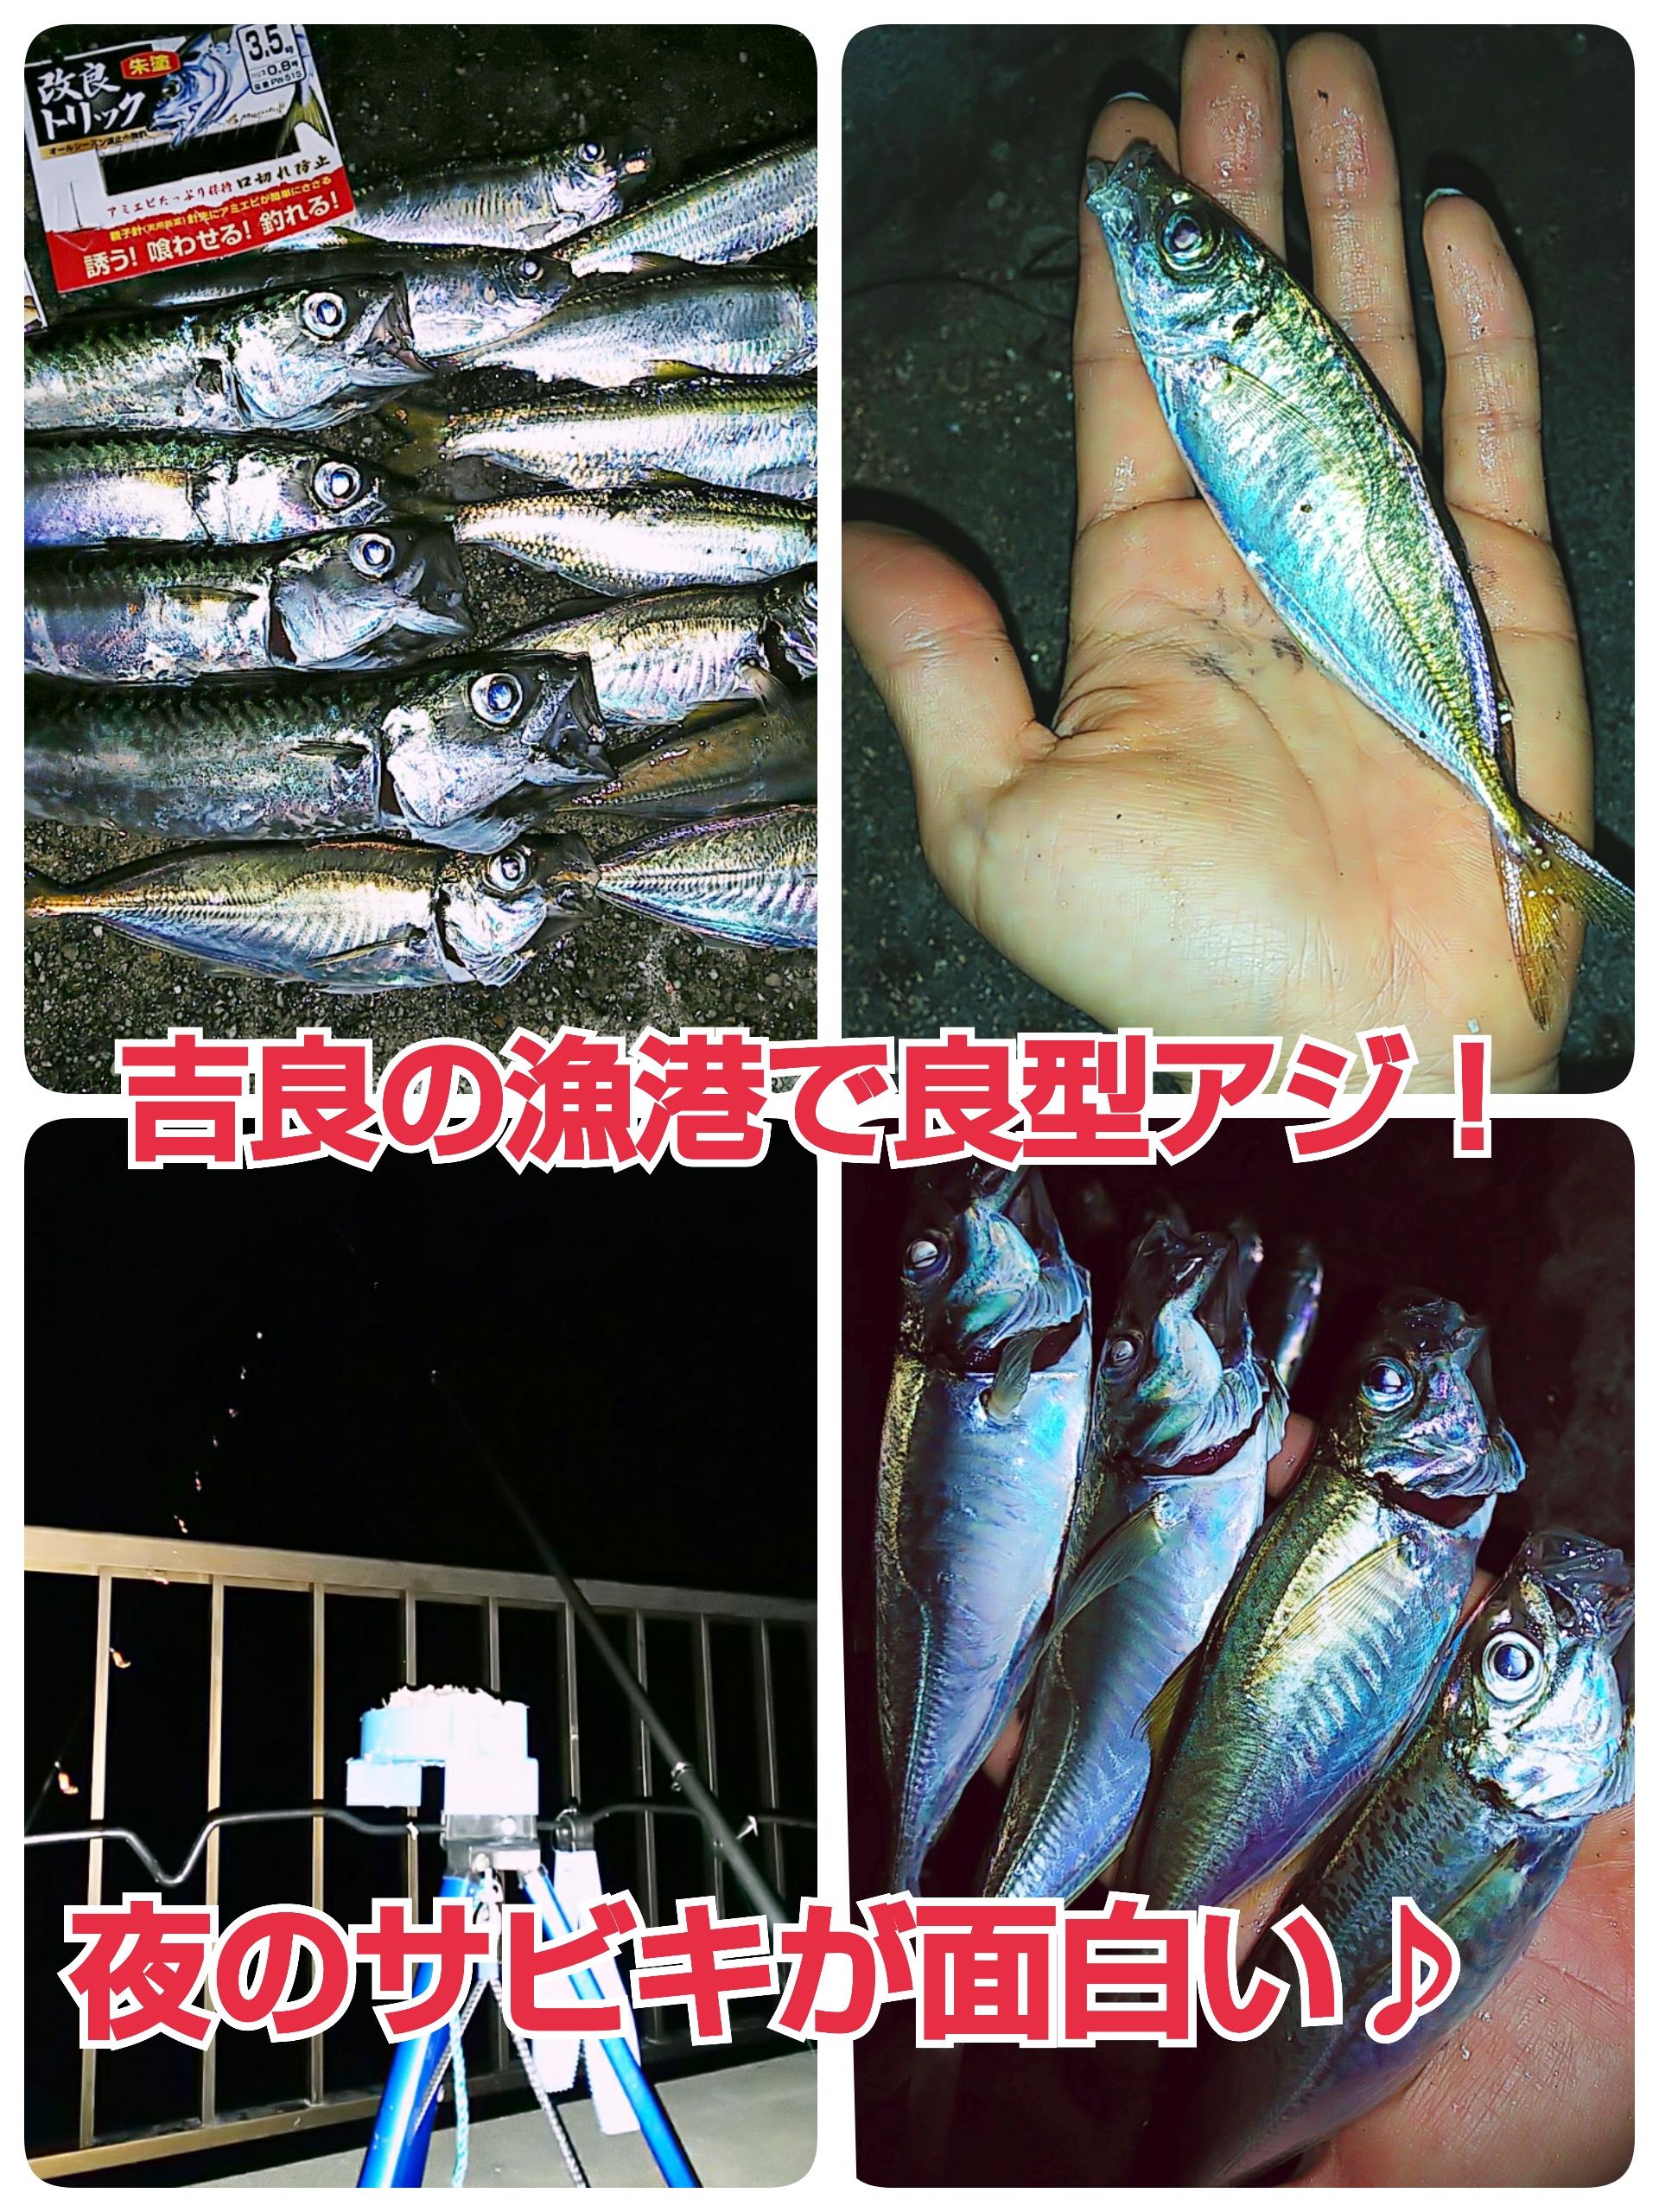 吉良の漁港で良型アジ 夜のトリックサビキが熱い 釣具のイシグロ 釣り情報サイト